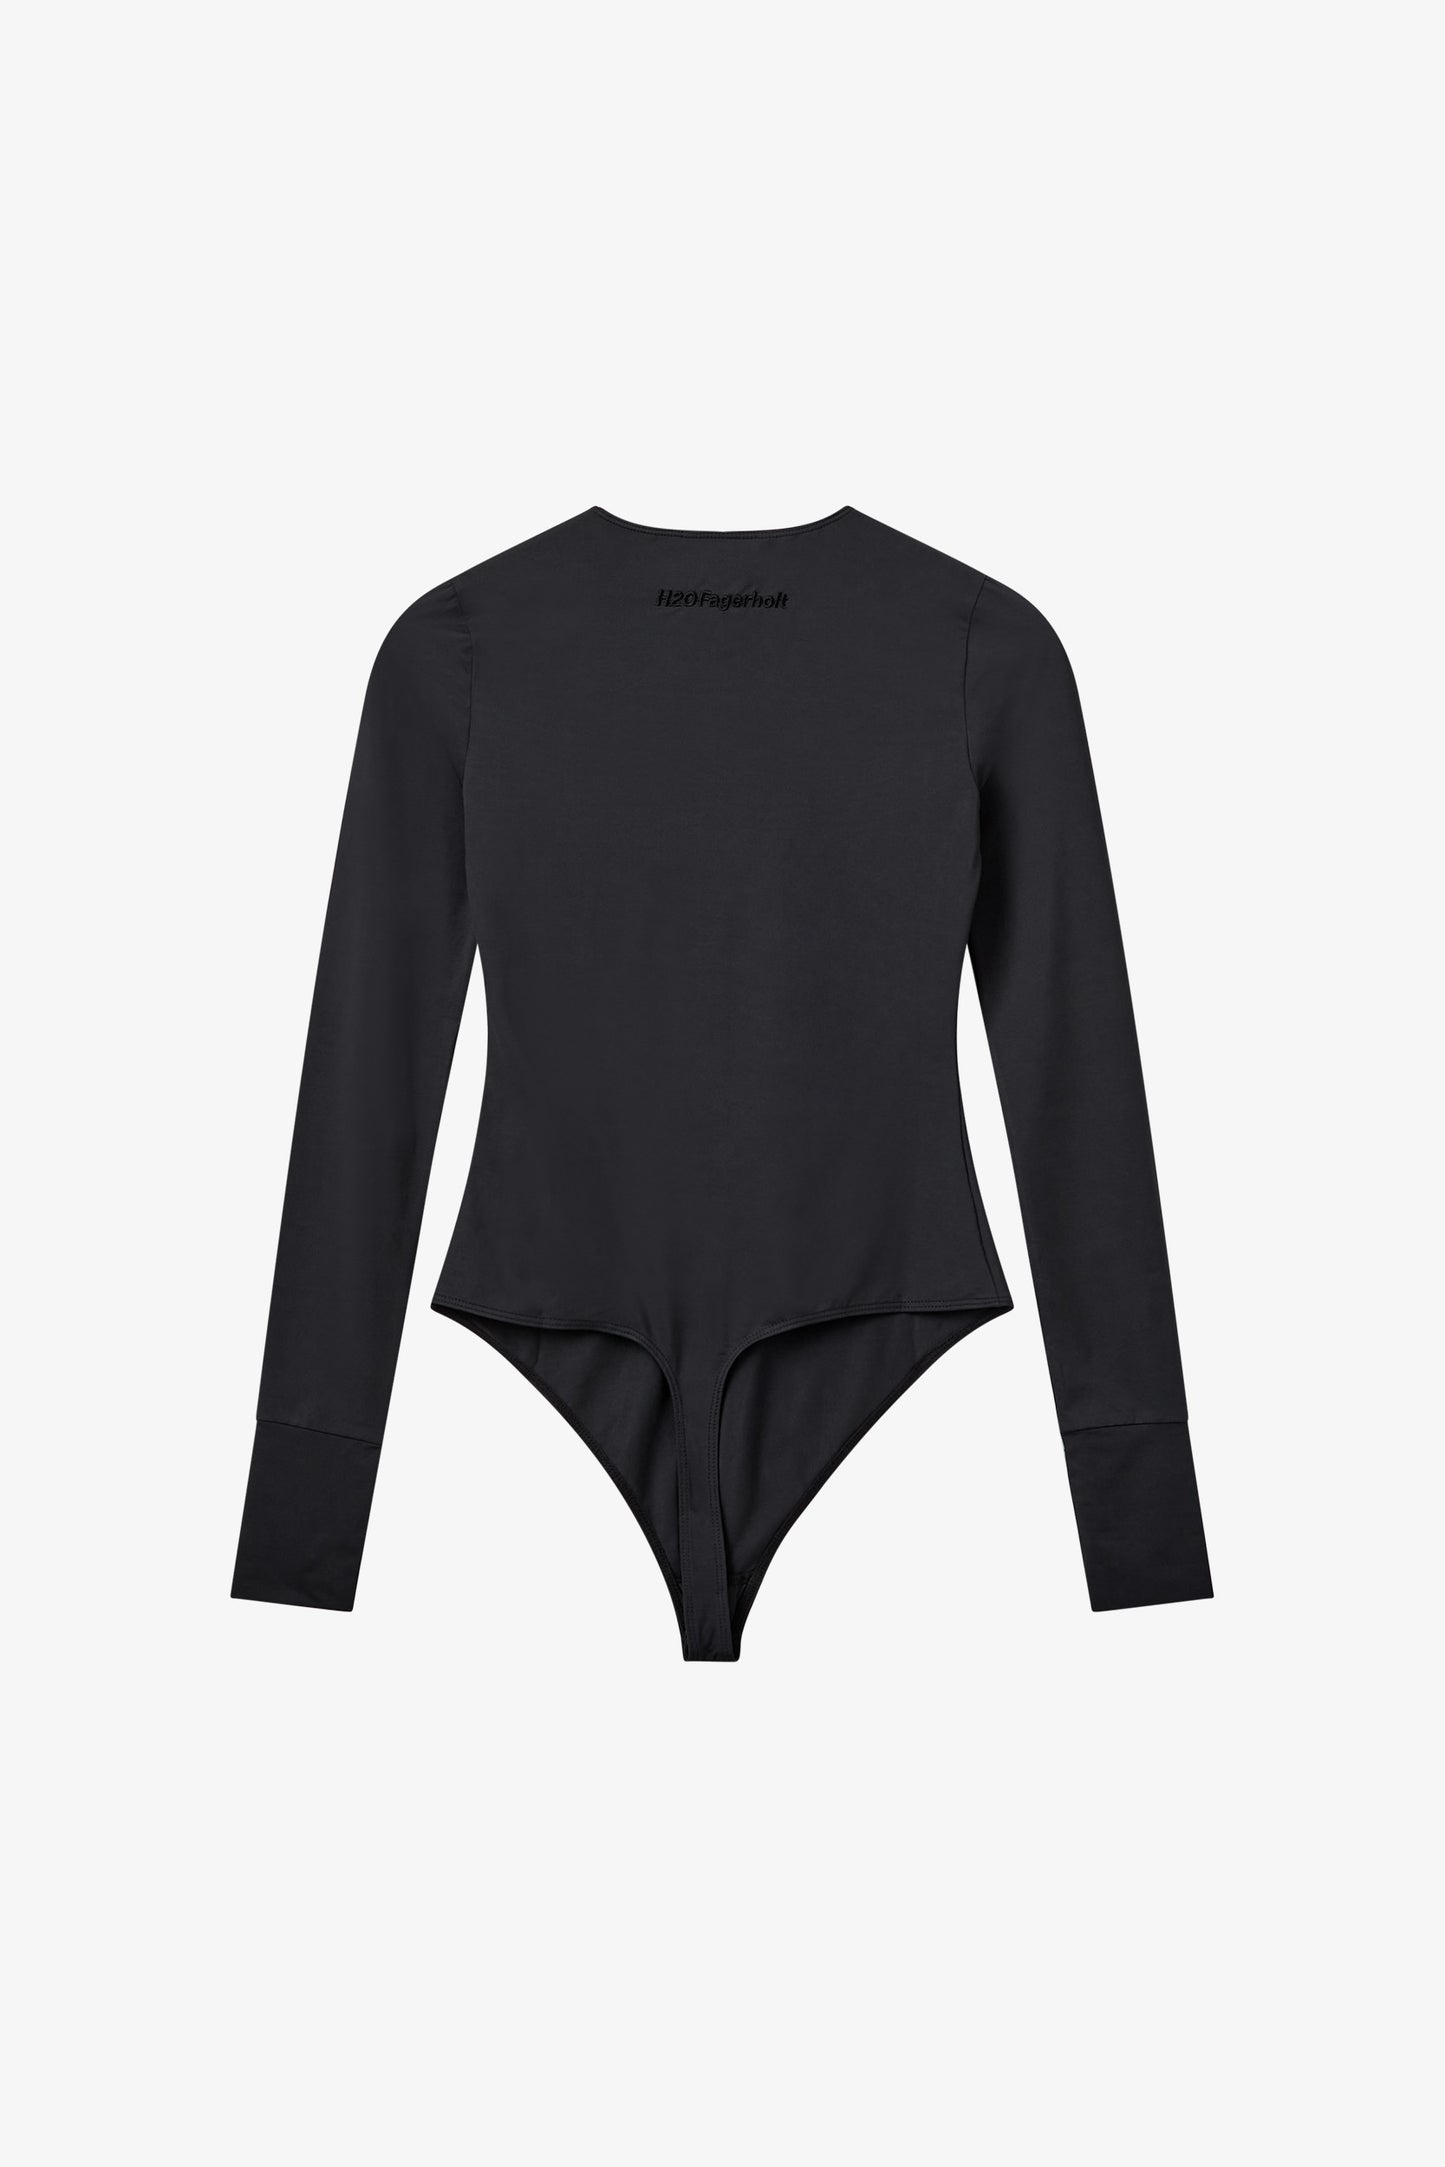 H2OFagerholt Gigi Long Sleeve Body T-Shirt L/S 3501 Deep Black